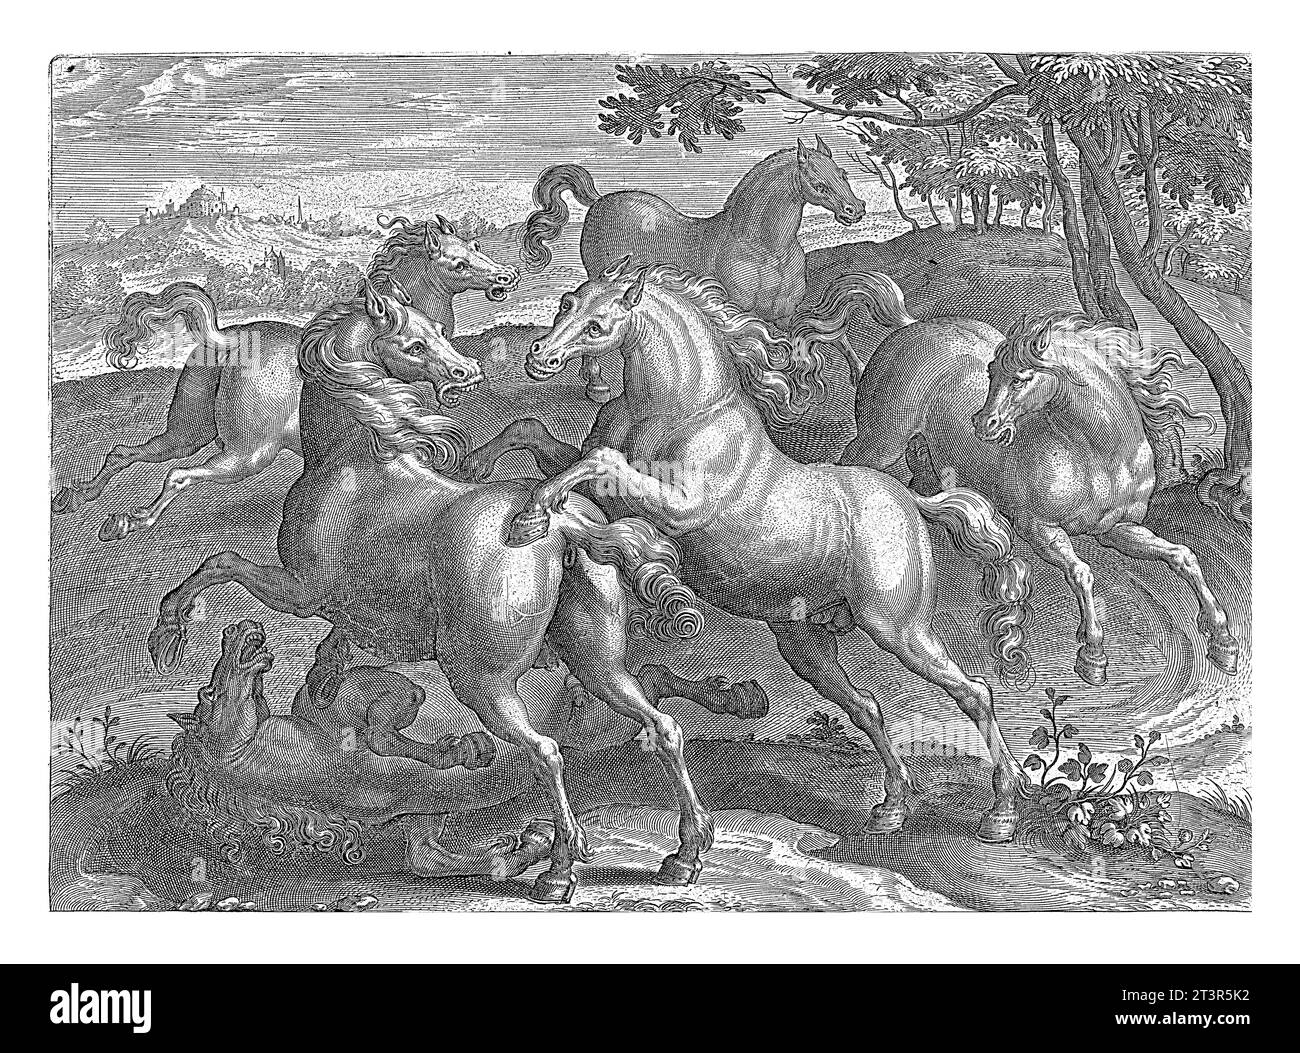 Sechs Kampfpferde, Adriaen Collaert (zugeschrieben), nach Jan van der Straet, ca. 1578 - ca. 1582 sechs Pferde. Eines der Pferde liegt auf der Erde Stockfoto